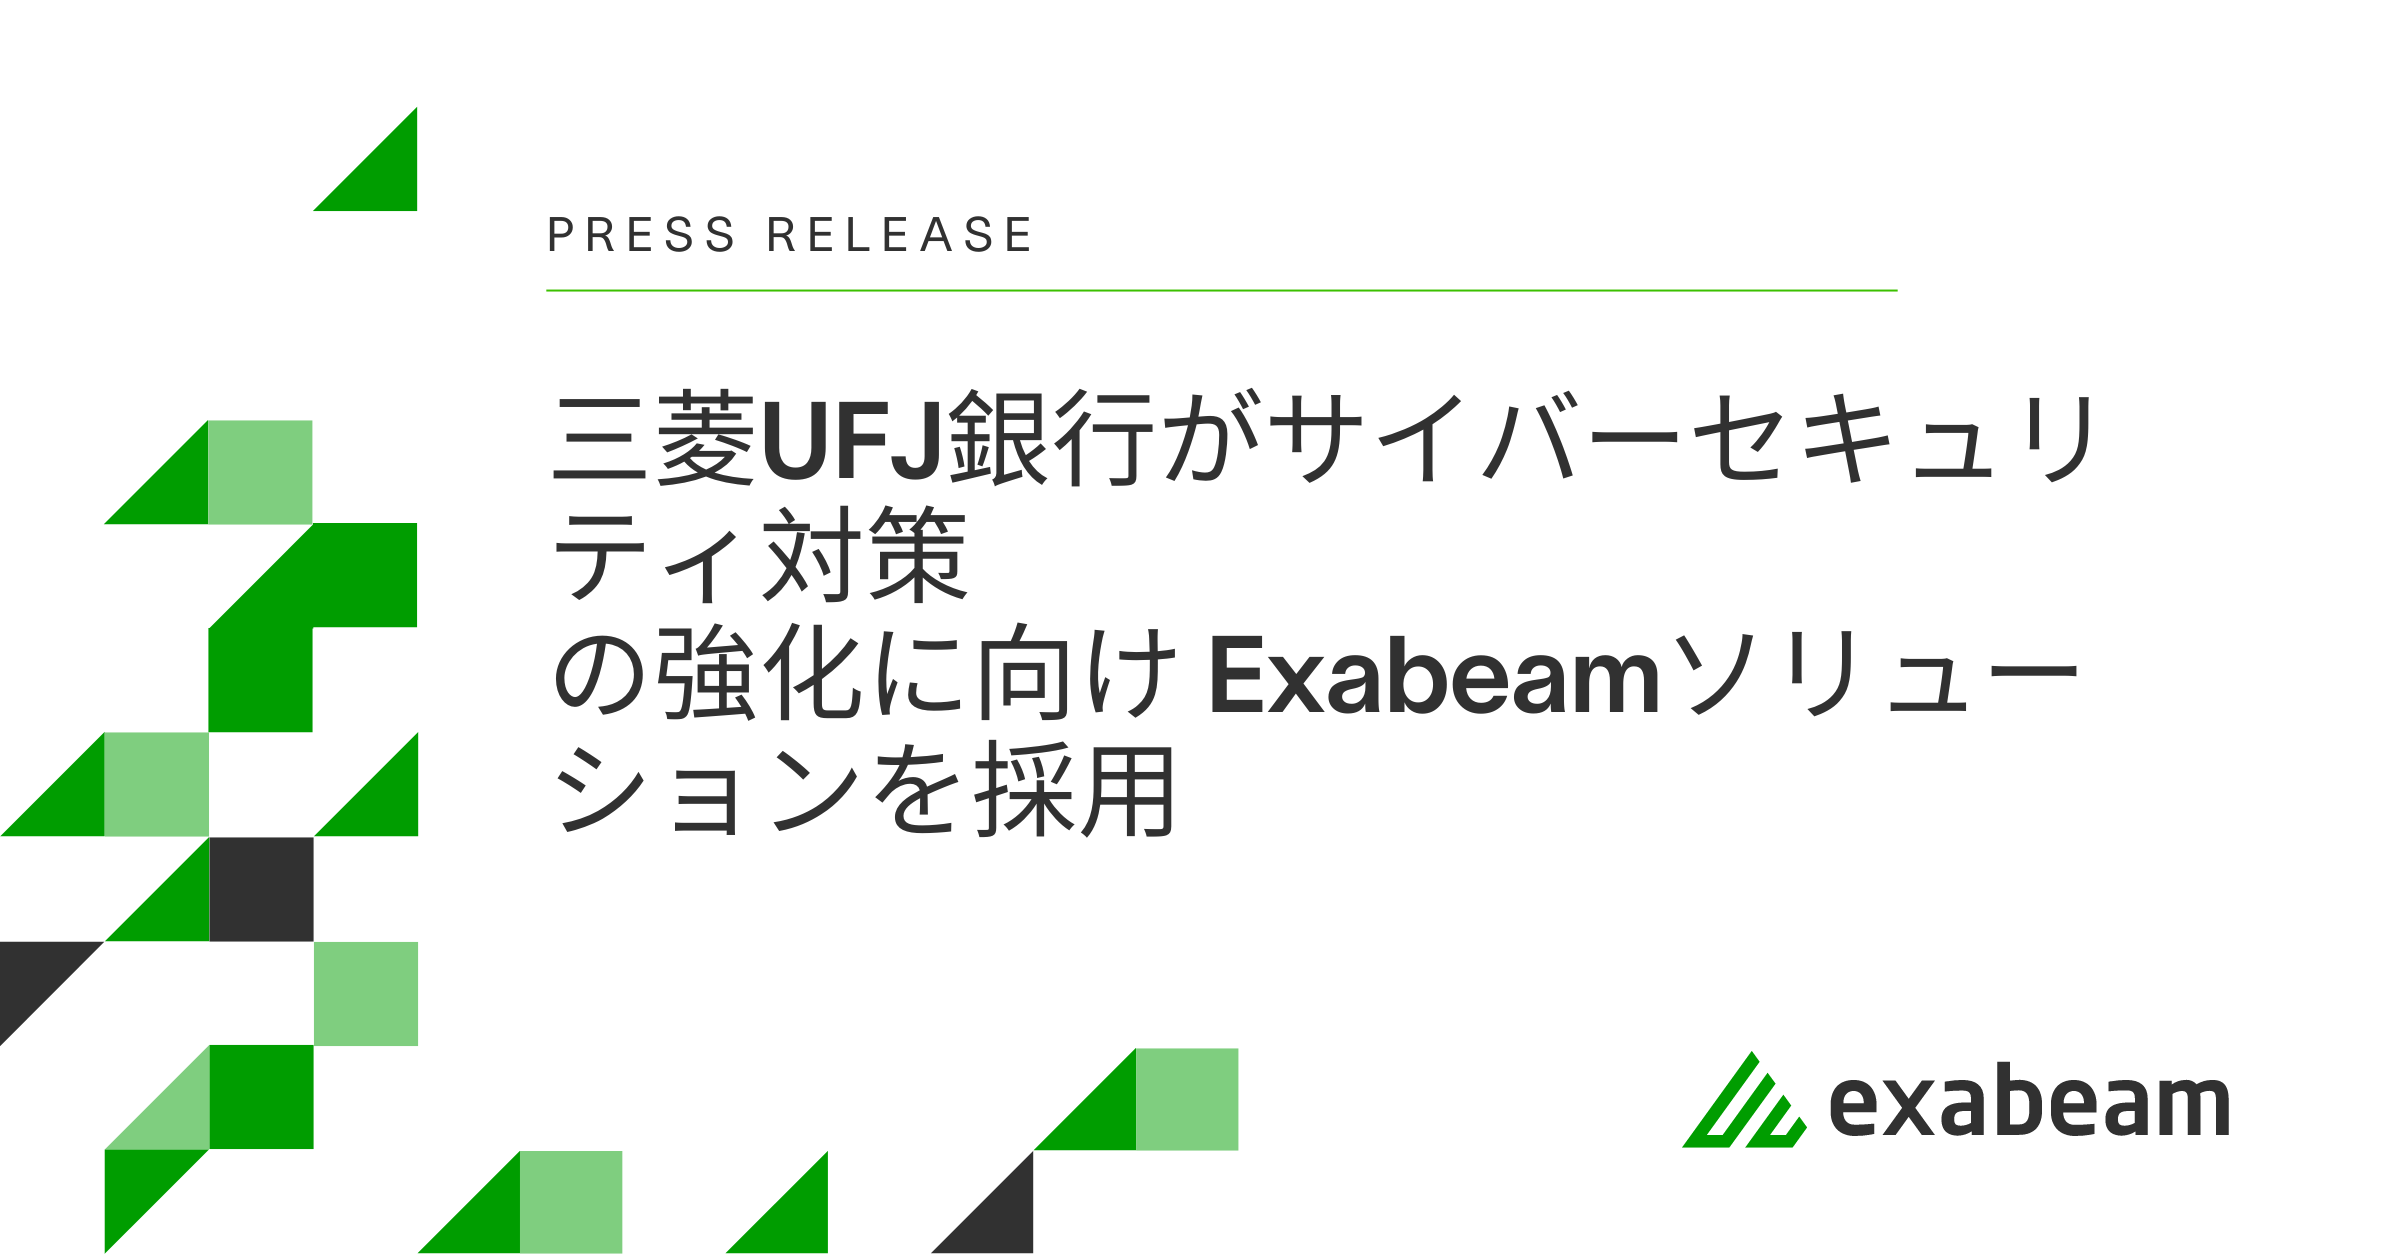 三菱UFJ銀行がサイバーセキュリティ対策の強化に向け Exabeamソリューションを採用